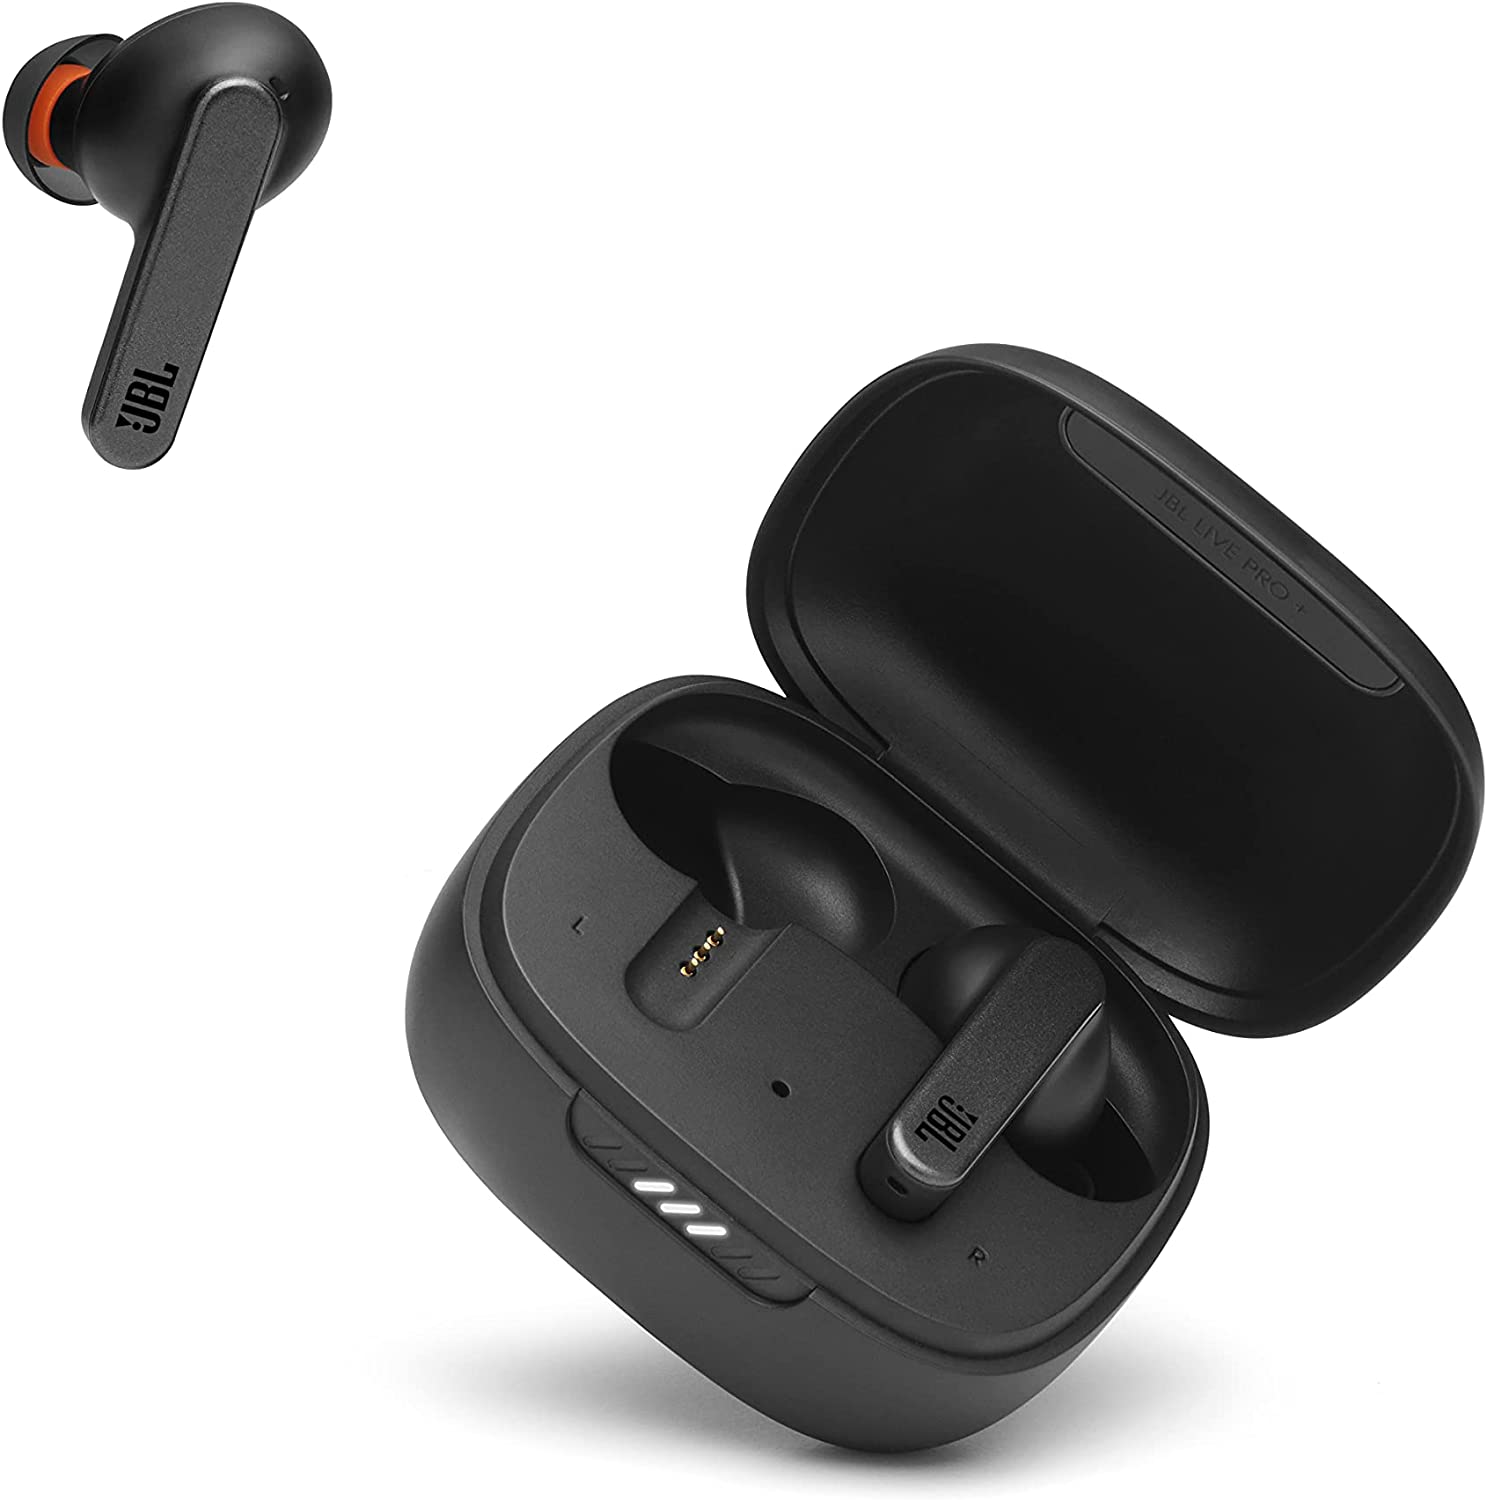 JBL Live PRO+ TWS True Wireless In-Ear Noise Cancelling Headphones - Black (Certified Refurbished)